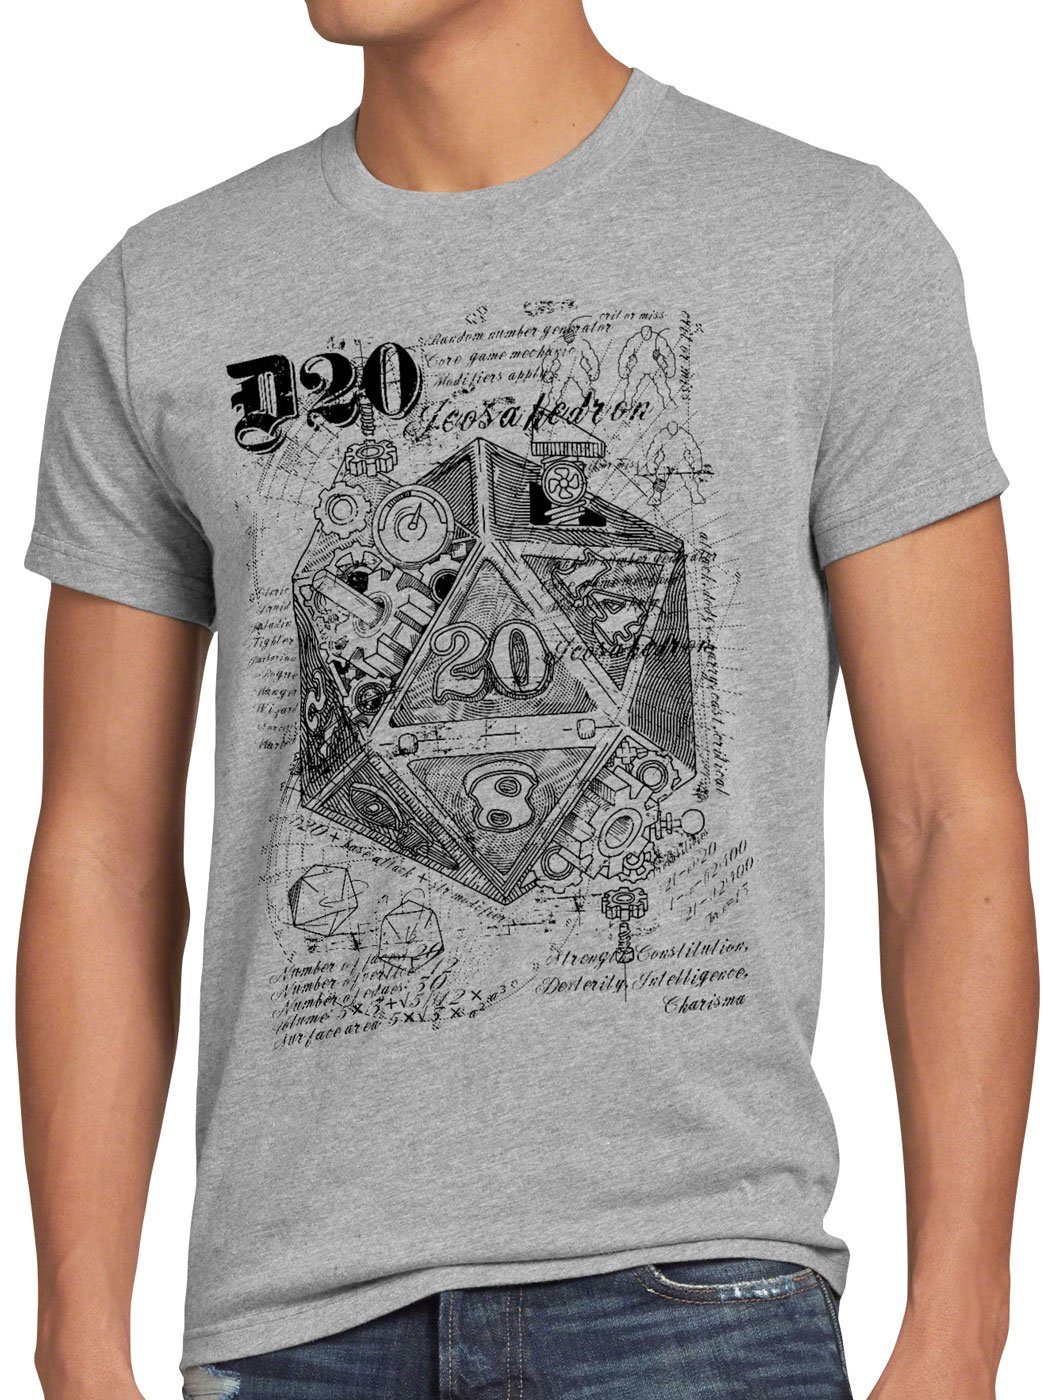 style3 Print-Shirt Herren T-Shirt D20 Da Vinci dragons würfel dungeon grau meliert